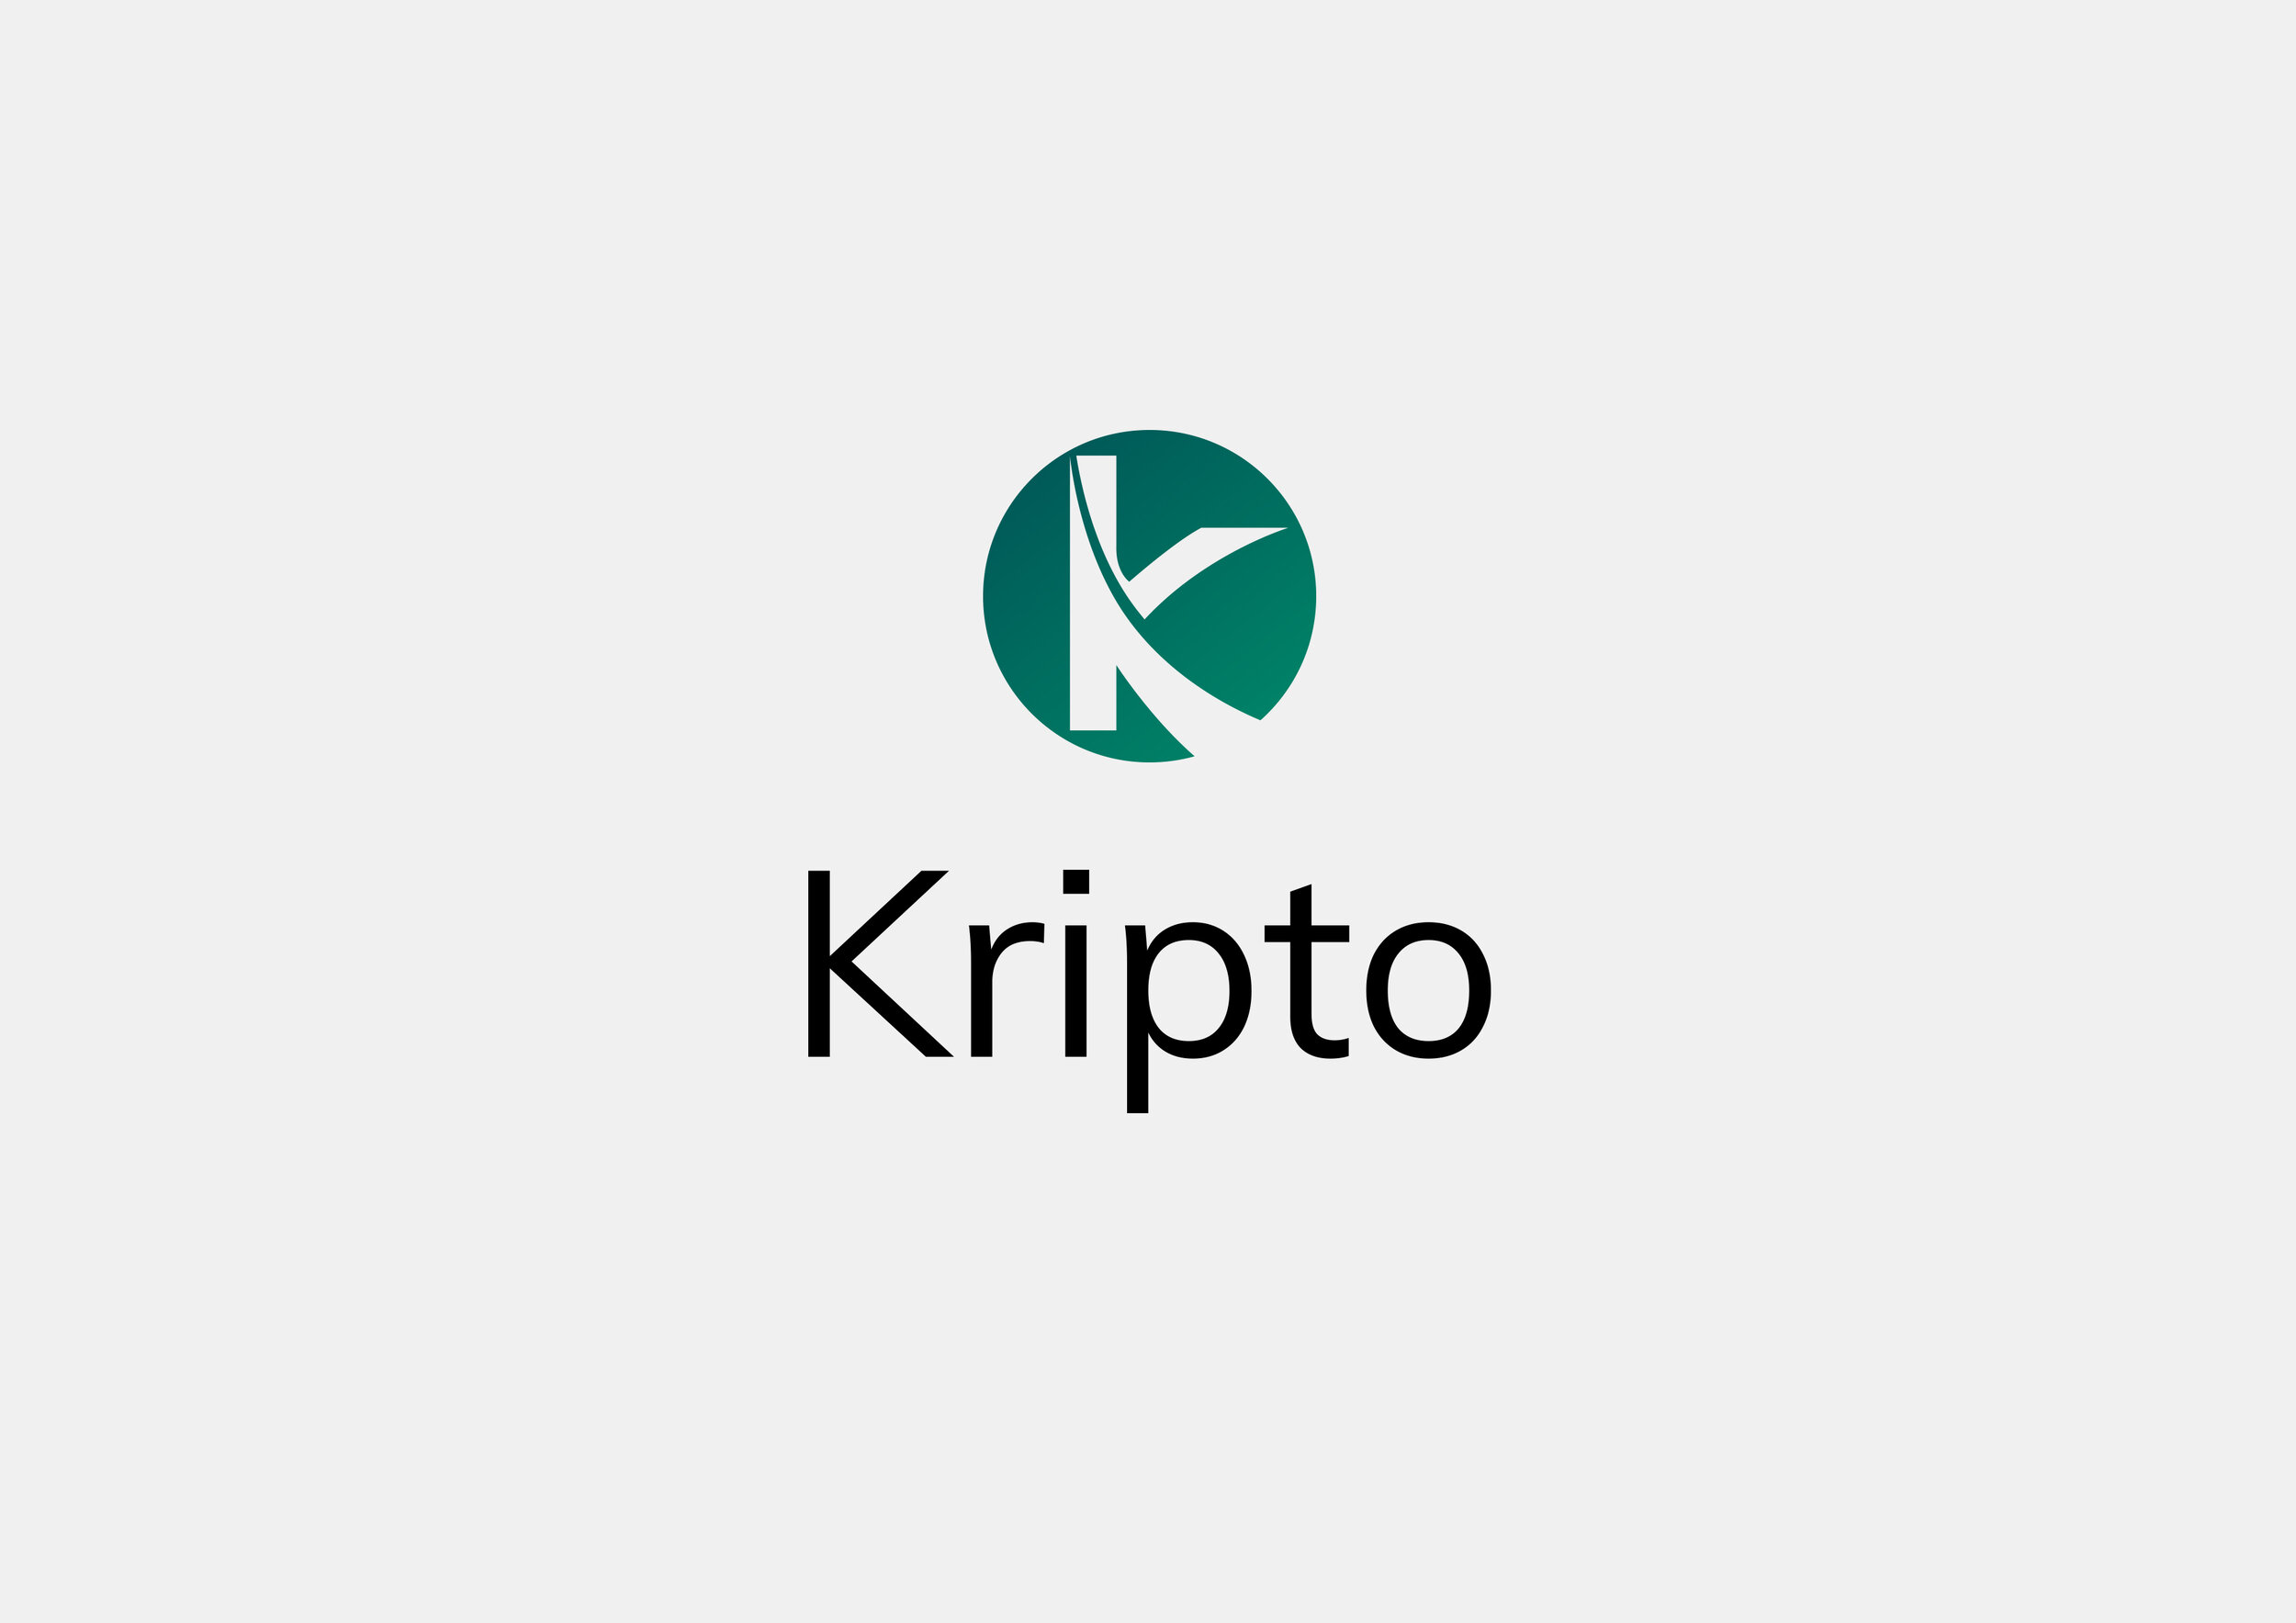 Kripto logo.jpg